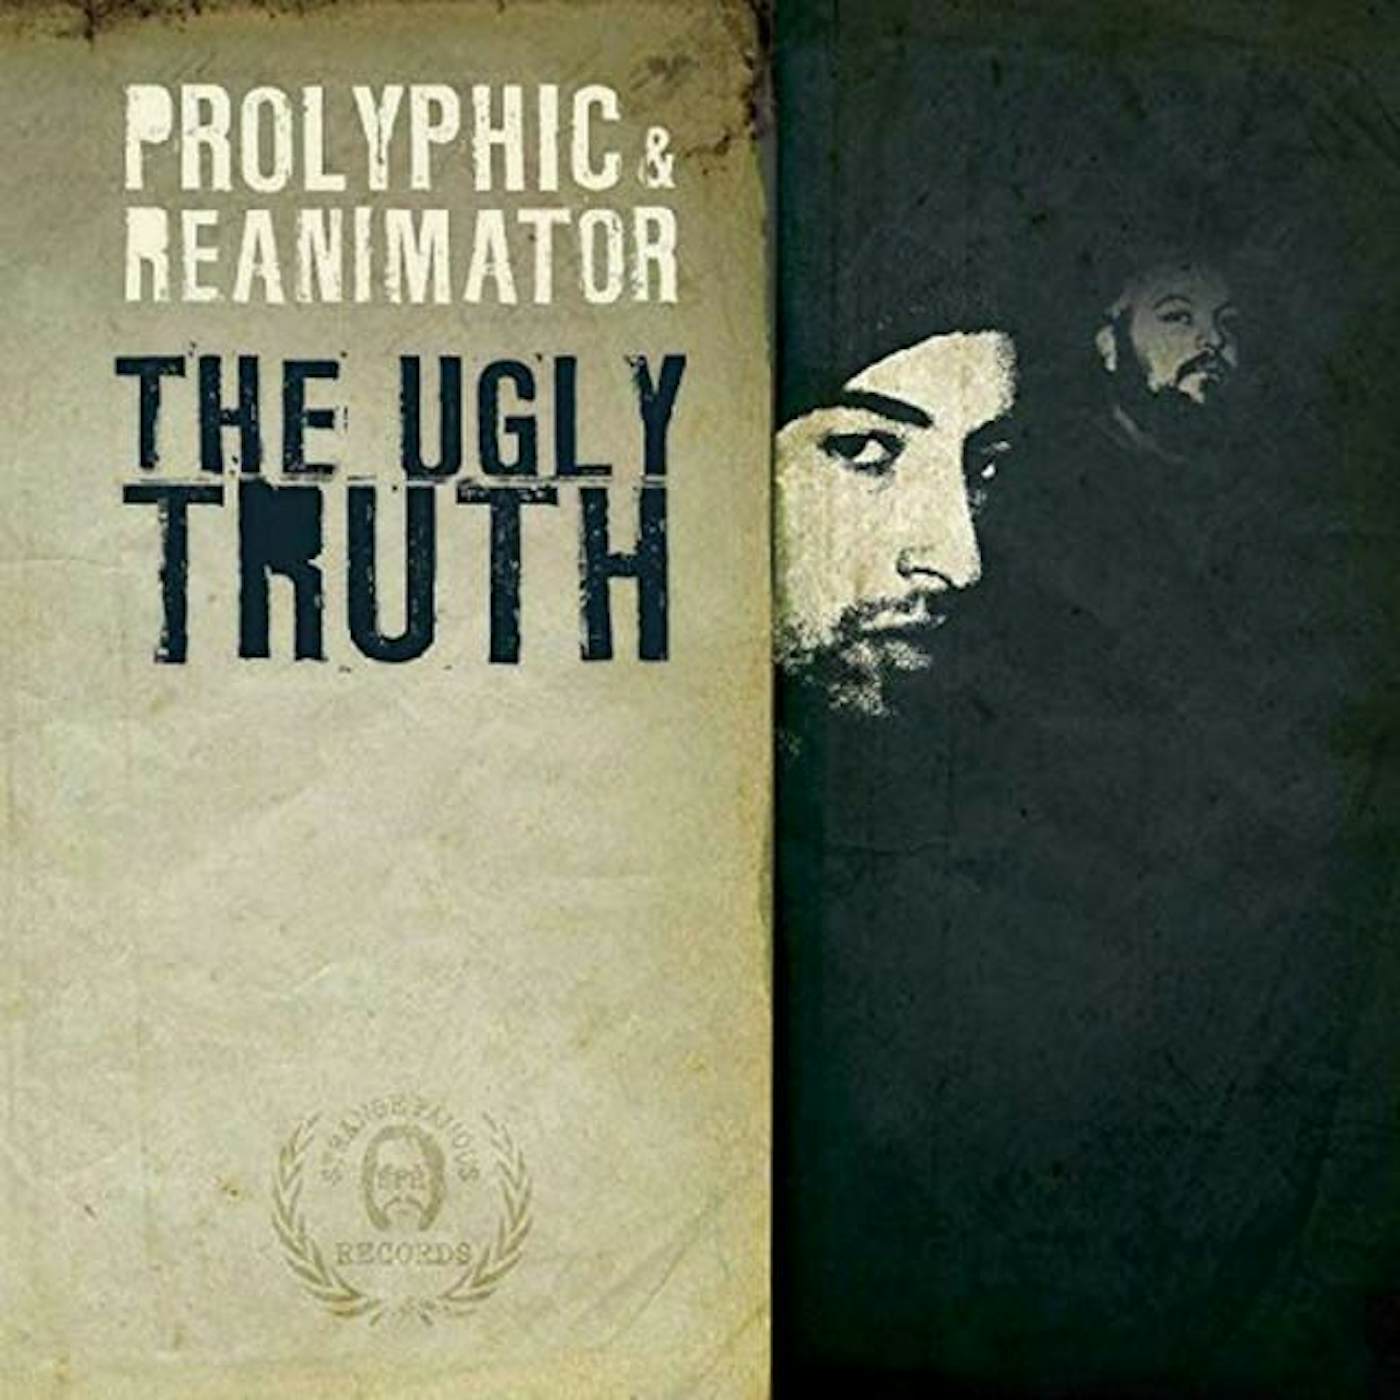 Prolyphic & Reanimator